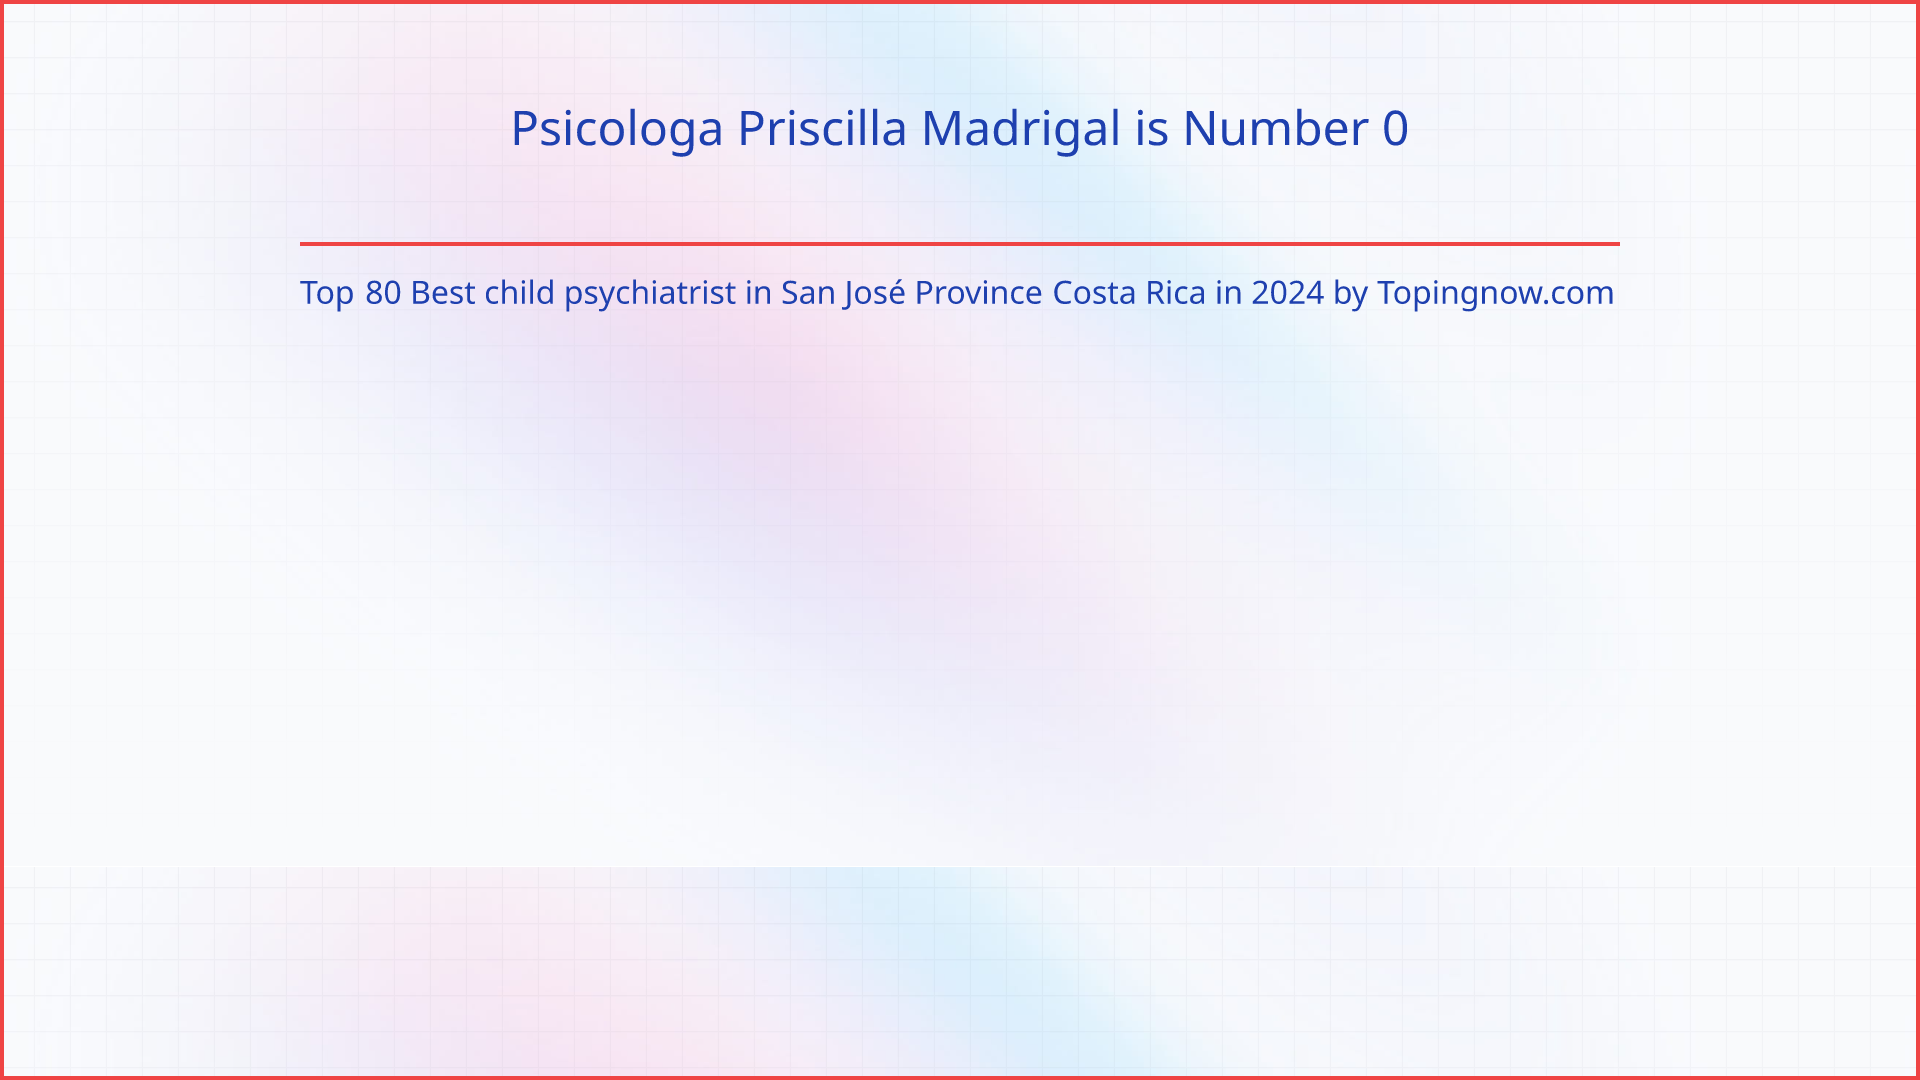 Psicologa Priscilla Madrigal: Top 80 Best child psychiatrist in San José Province Costa Rica in 2024